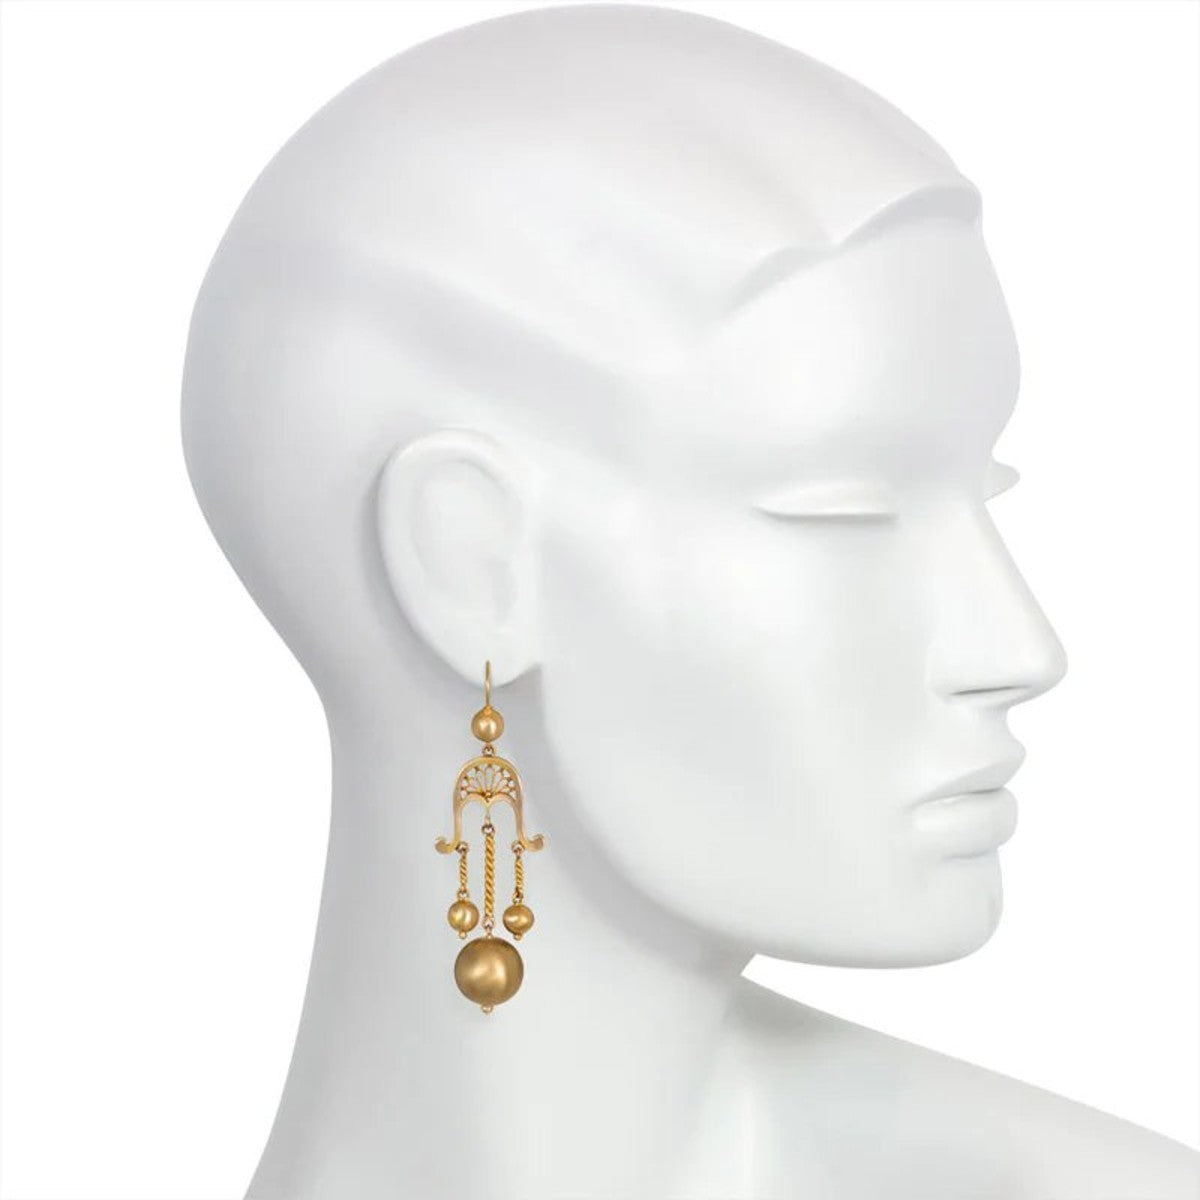 Victorian 14KT Yellow Gold Girandole Earrings on ear